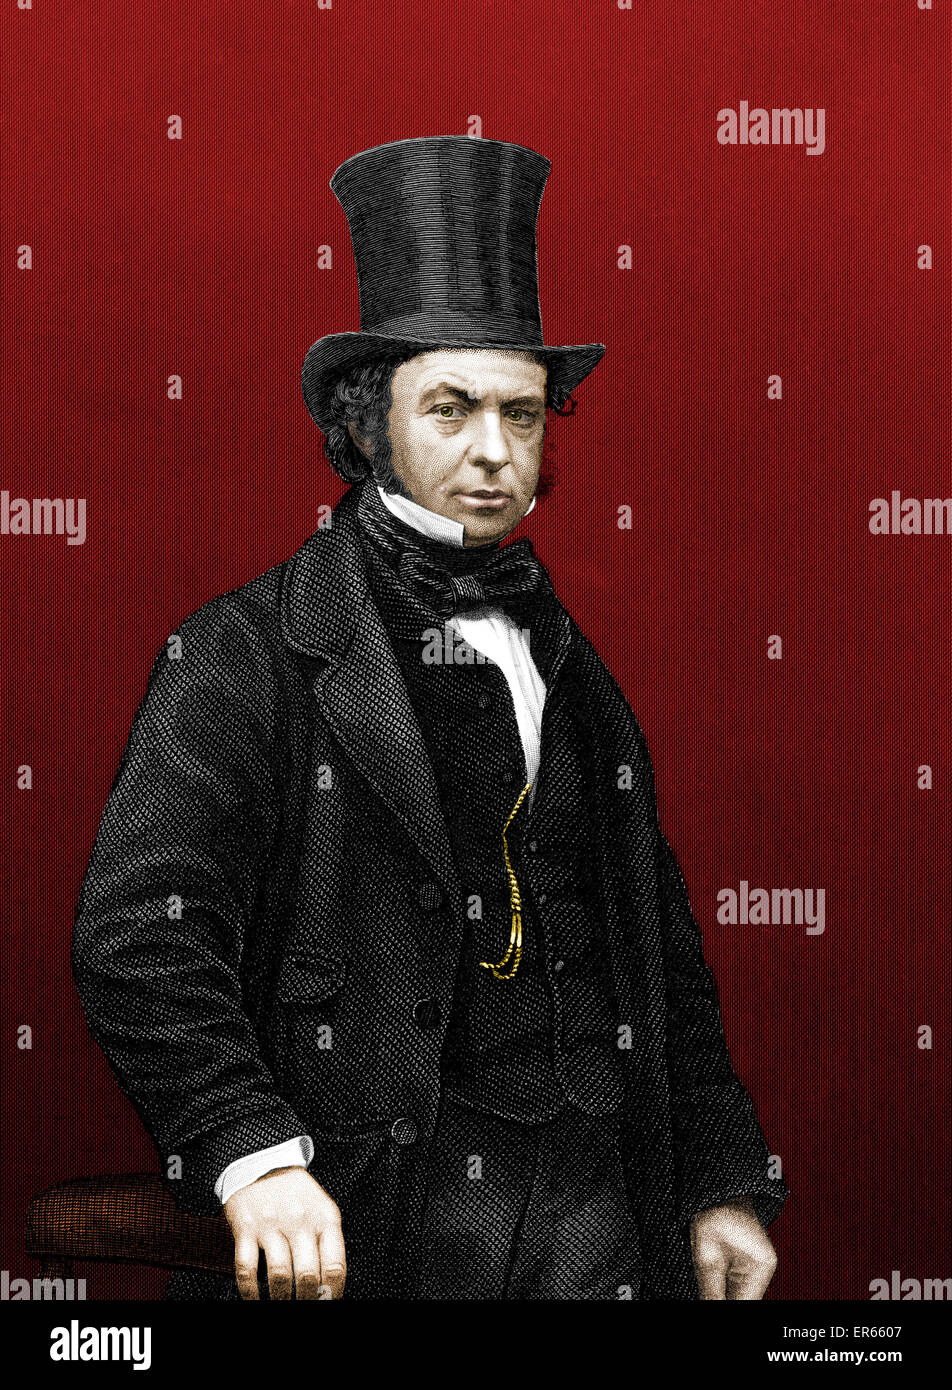 Isambard Kingdom Brunel (1806 15. September 1859) - englischer Maschinen- und Bauingenieur. Konstrukteur und Erbauer von Werften, die Great Western Railway, bahnbrechende Dampfschiffe (einschließlich The Great Eastern) und viele wichtige Brücken und Tunnel.  ca. Stockfoto